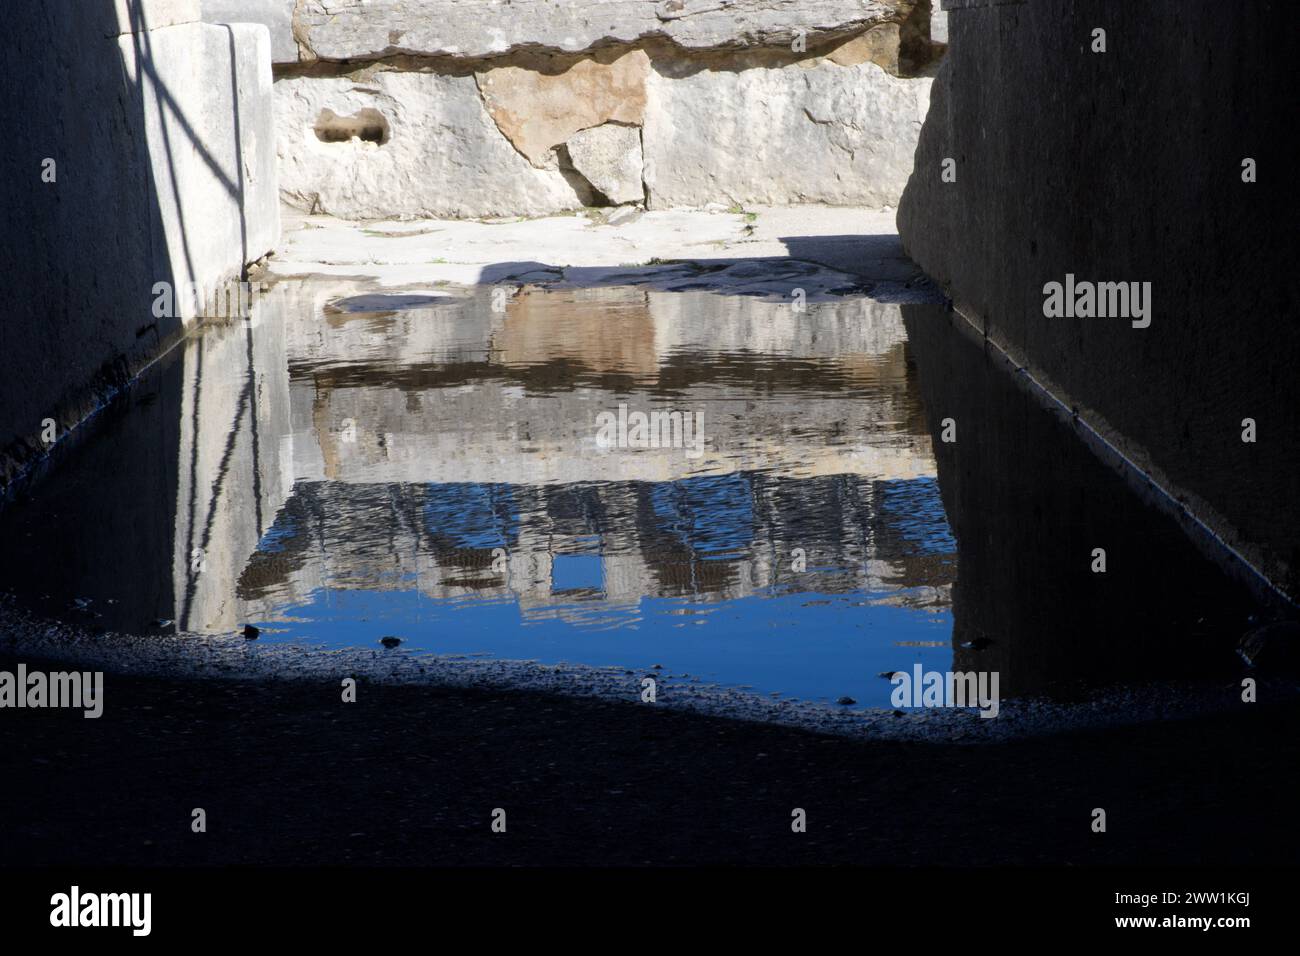 Reflet des arcades internes de l'amphithéâtre d'Arles dans une flaque - Arènes d'Arles - amphithéâtre romain à Arles France Banque D'Images